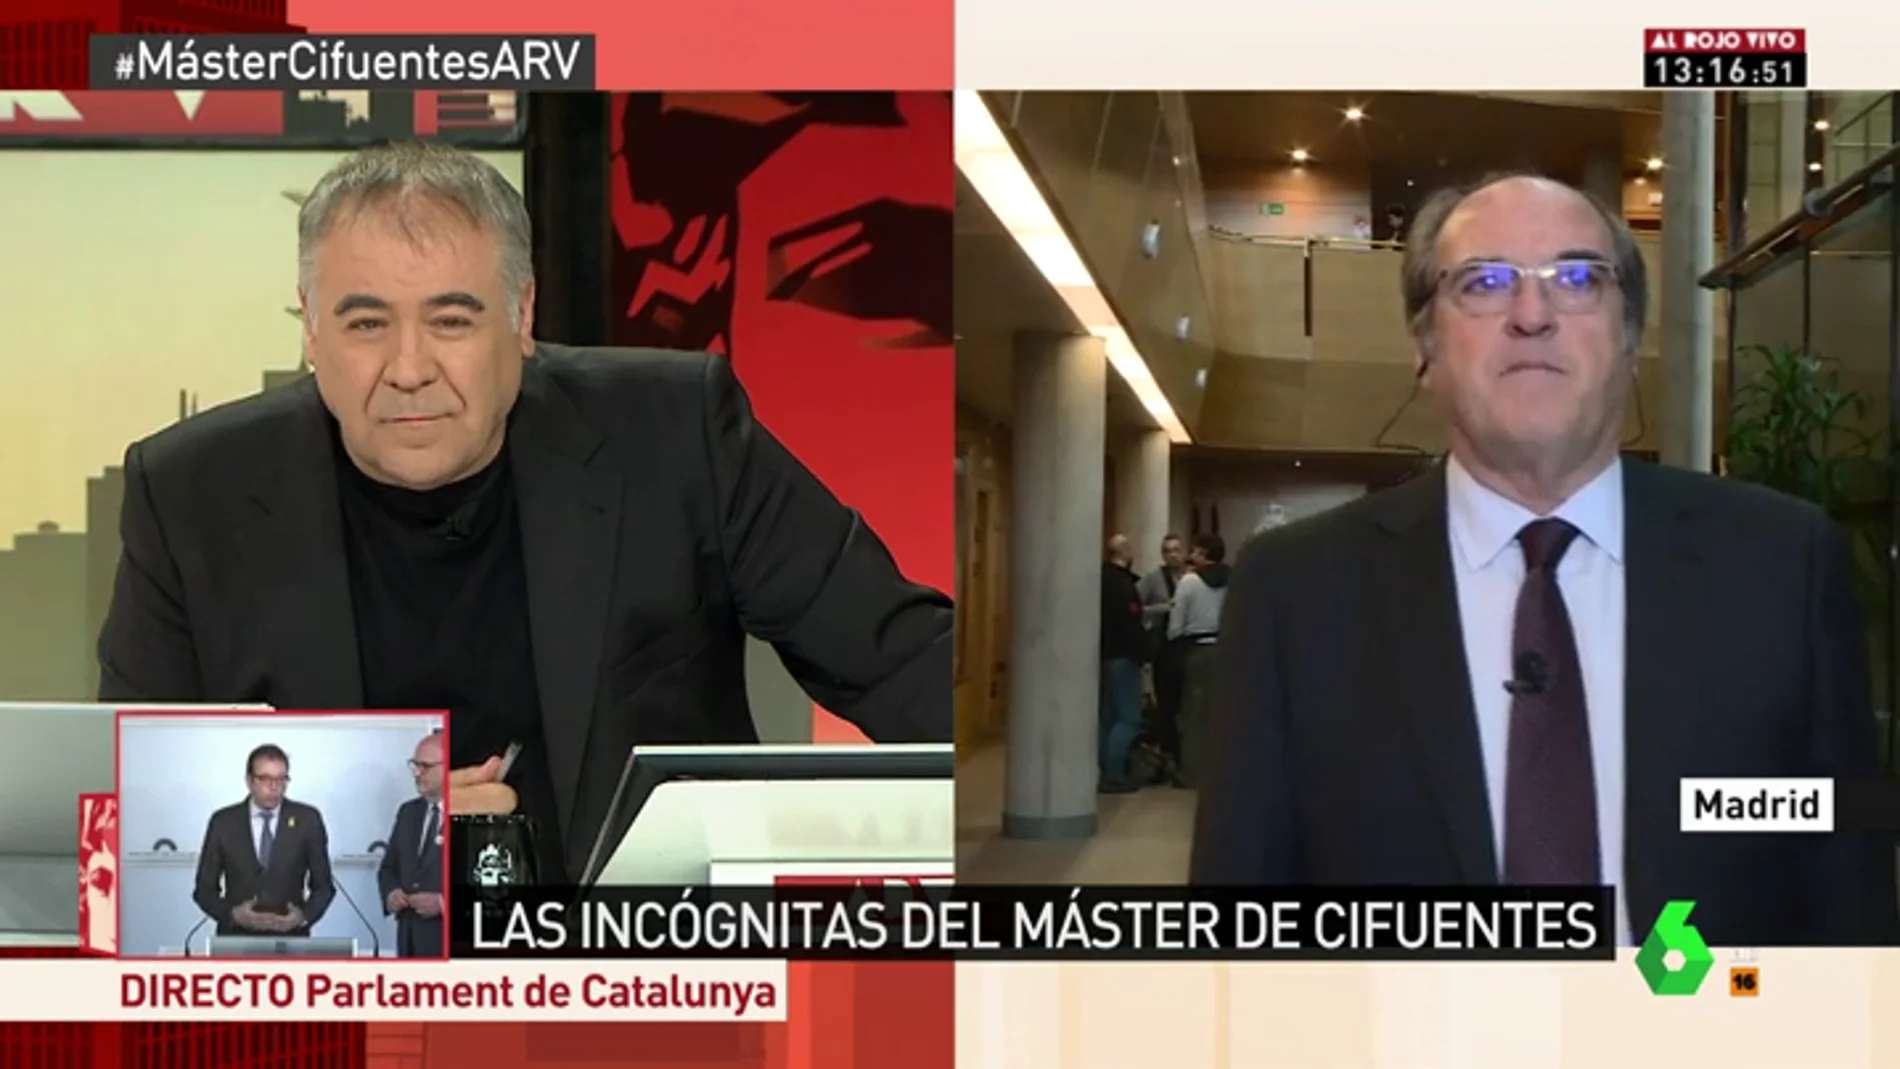 El portavoz del PSOE en la Asamblea de Madrid Ángel Gabilondo